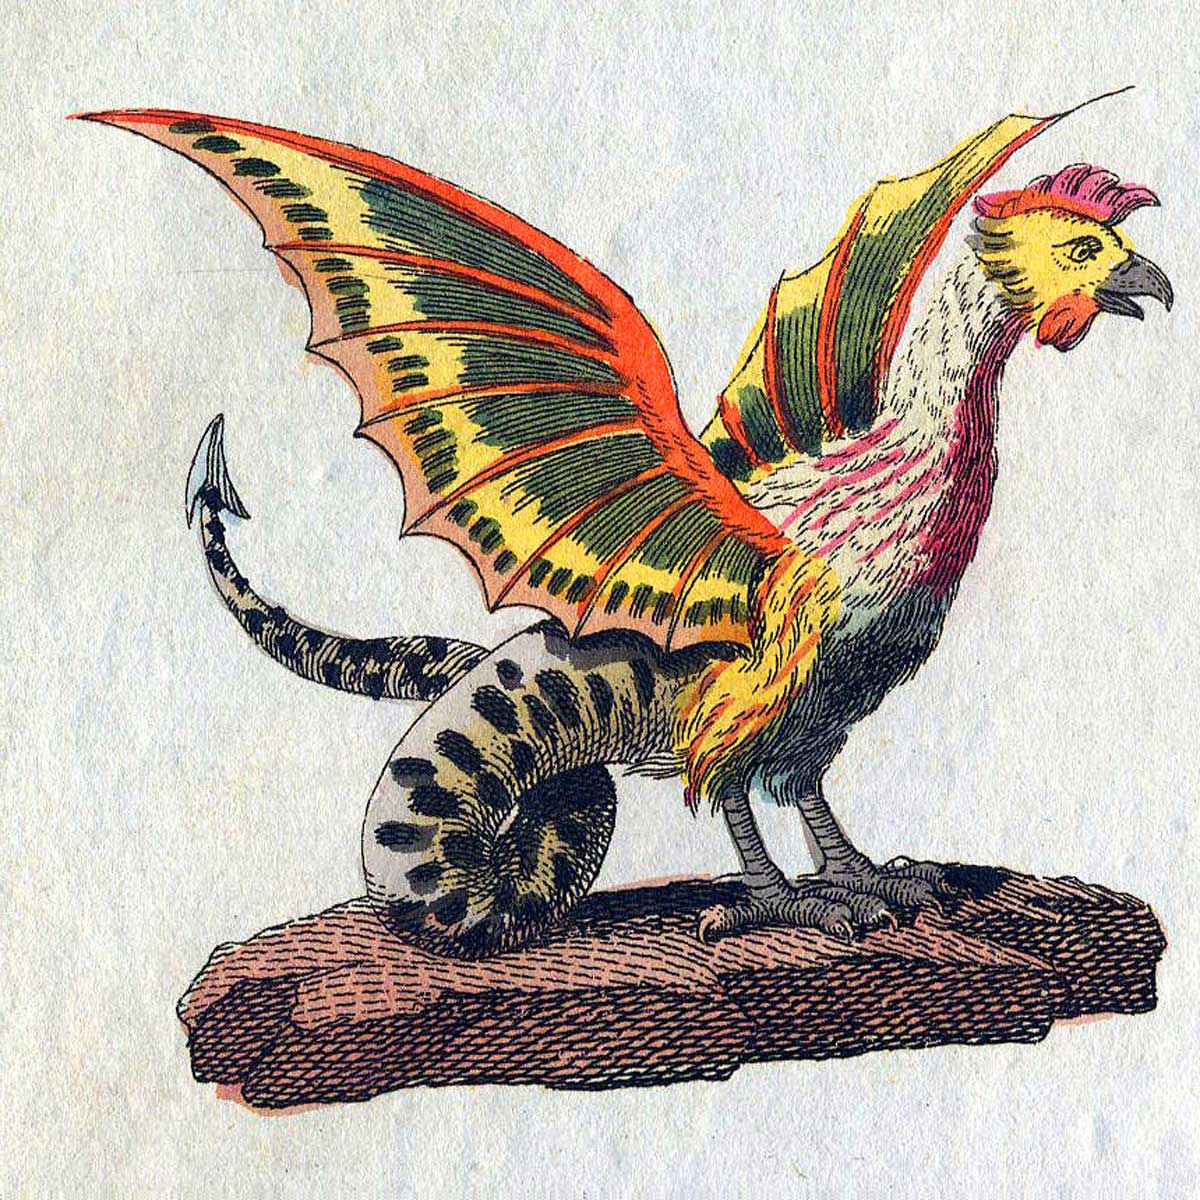 El basilisco es una criatura mitológica nacida de un juego de serpiente incubado por una gallina o gallo.